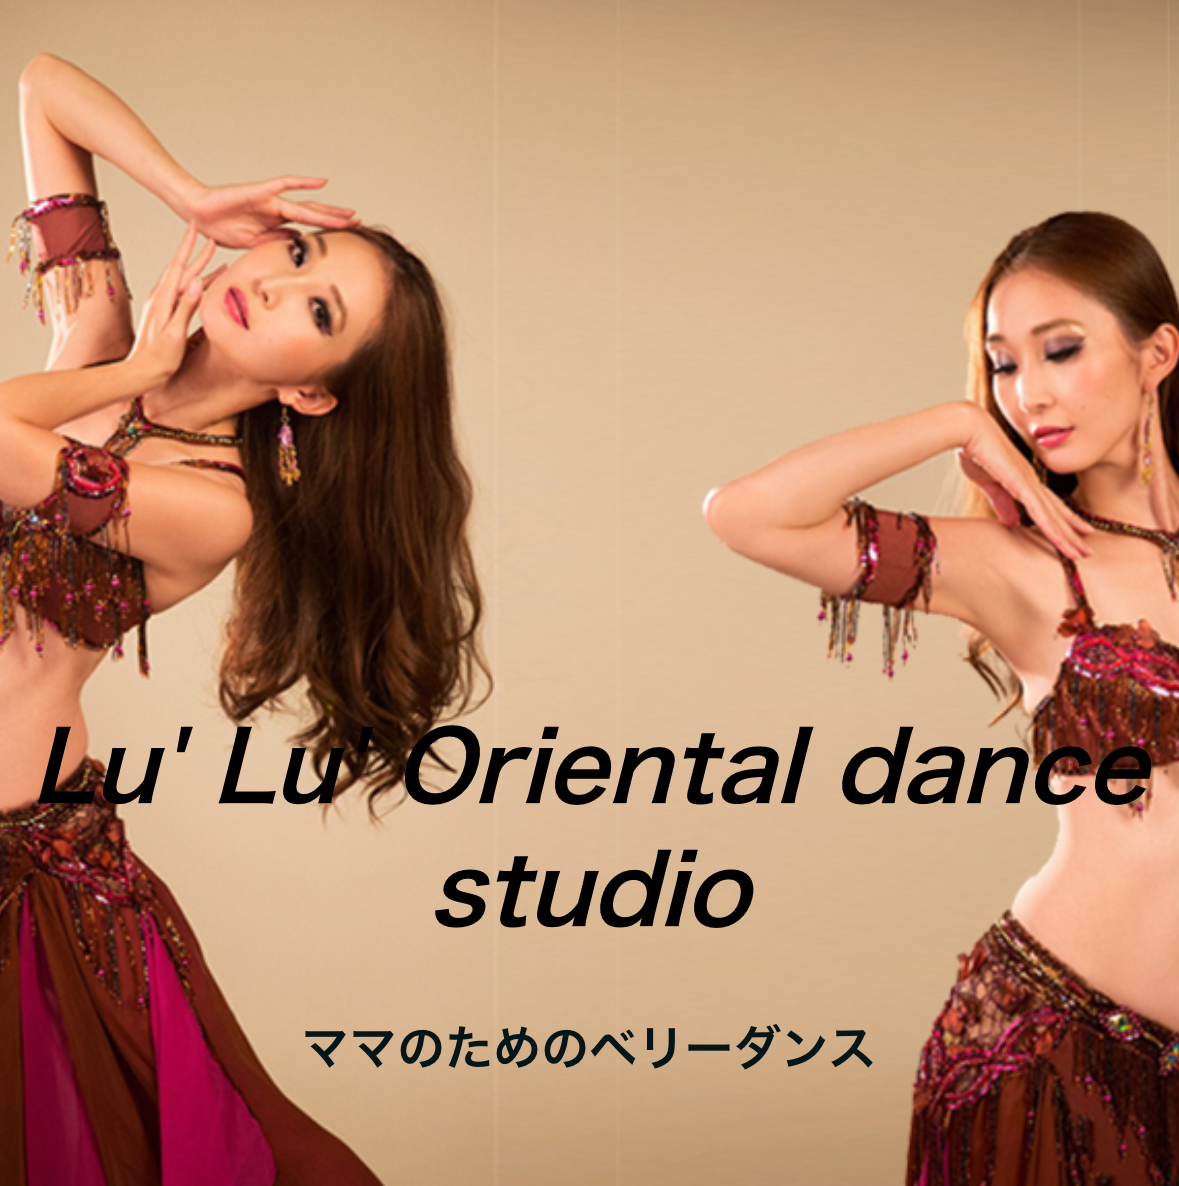 東京都のベリーダンス教室「Lu' Lu' Oriental dance studio」様のご紹介